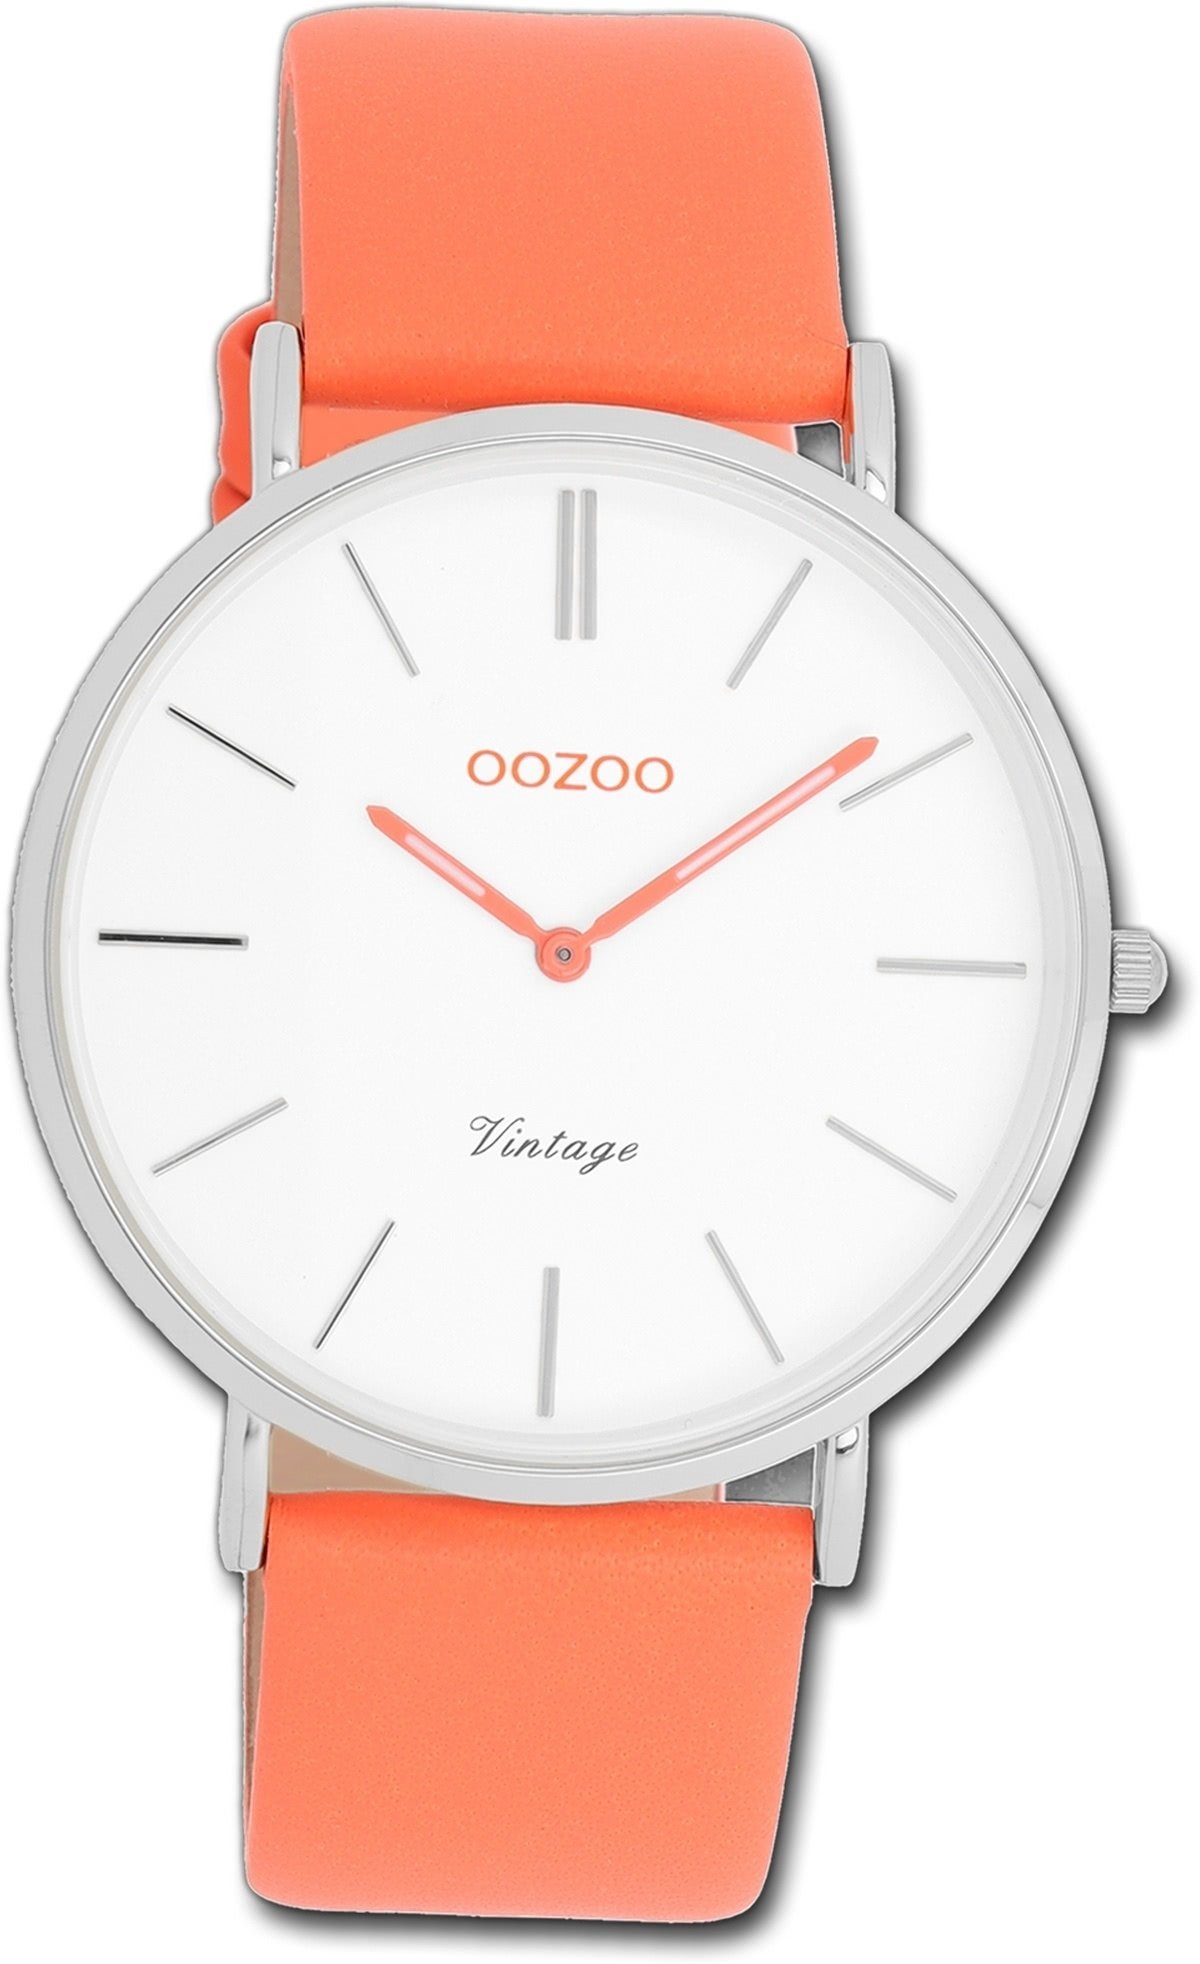 OOZOO Quarzuhr Oozoo Damen Armbanduhr Vintage orange, Damenuhr Lederarmband orange, rundes Gehäuse, groß (ca. 40mm)